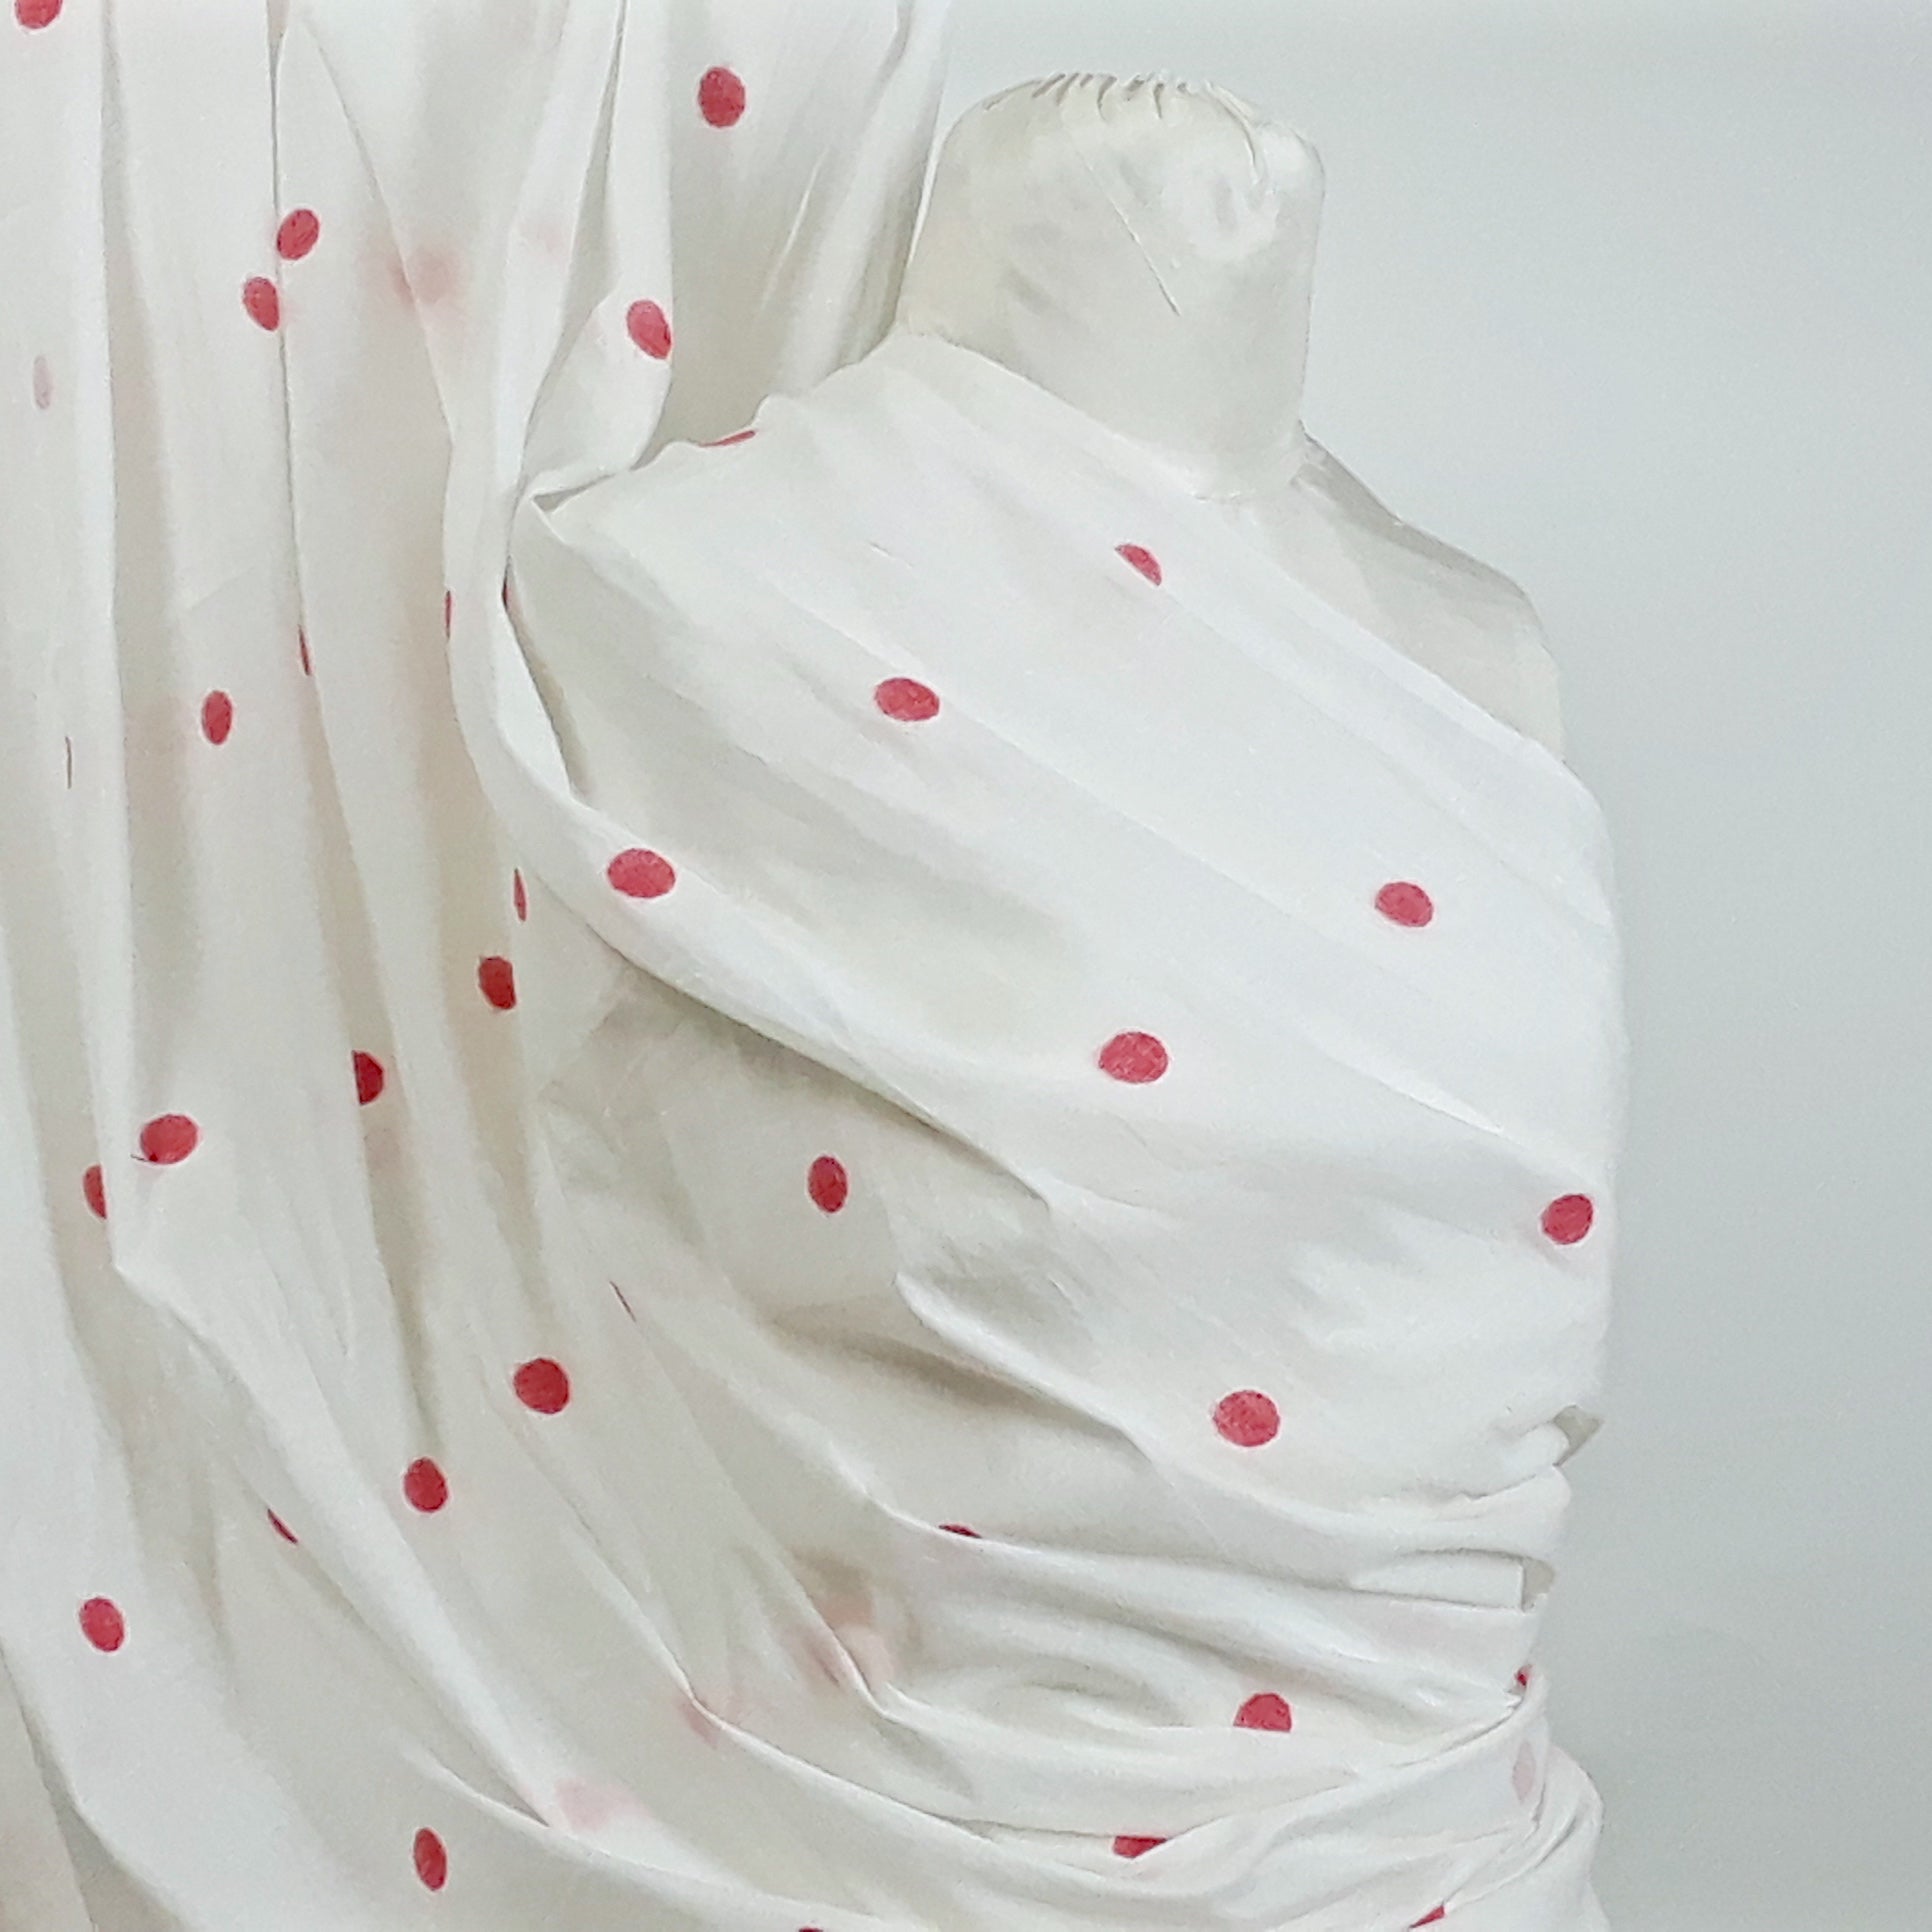 Red Polka Dots Cotton Handloom Jamdani Fabric